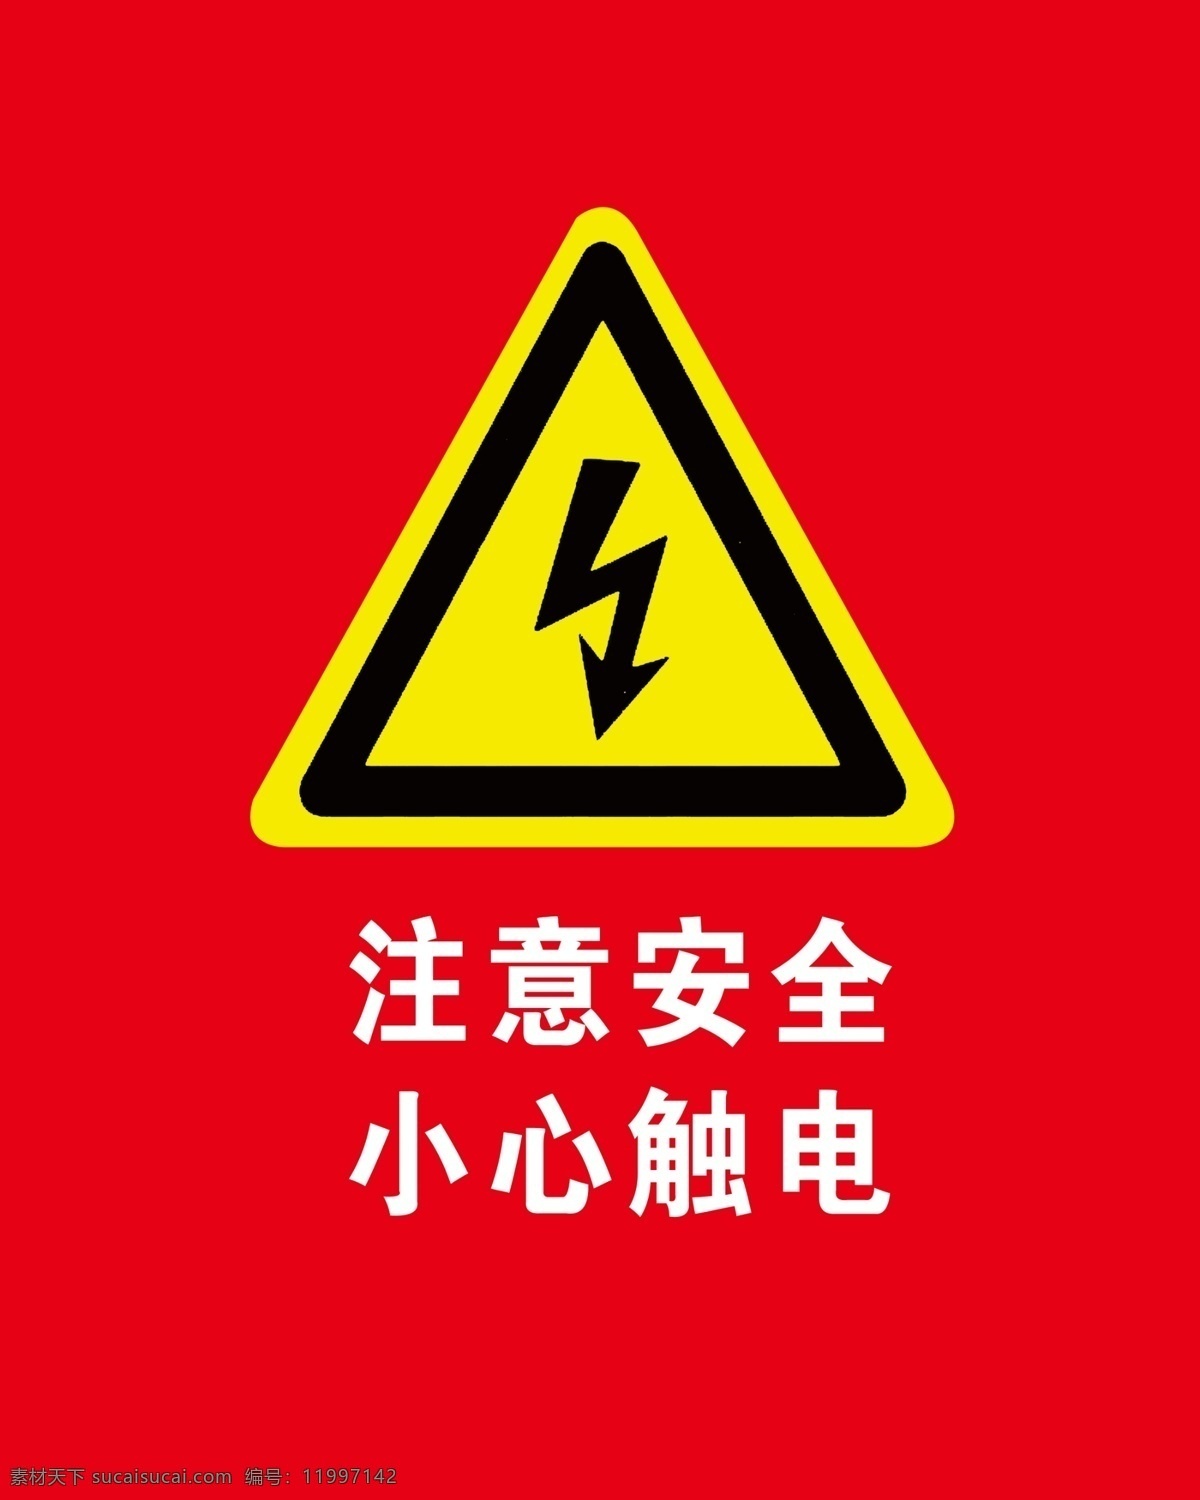 注意 安全 小心 触电 注意安全 小心触电 触电危险 危险警识 有电危险 小心有电 设计元素 国内广告设计